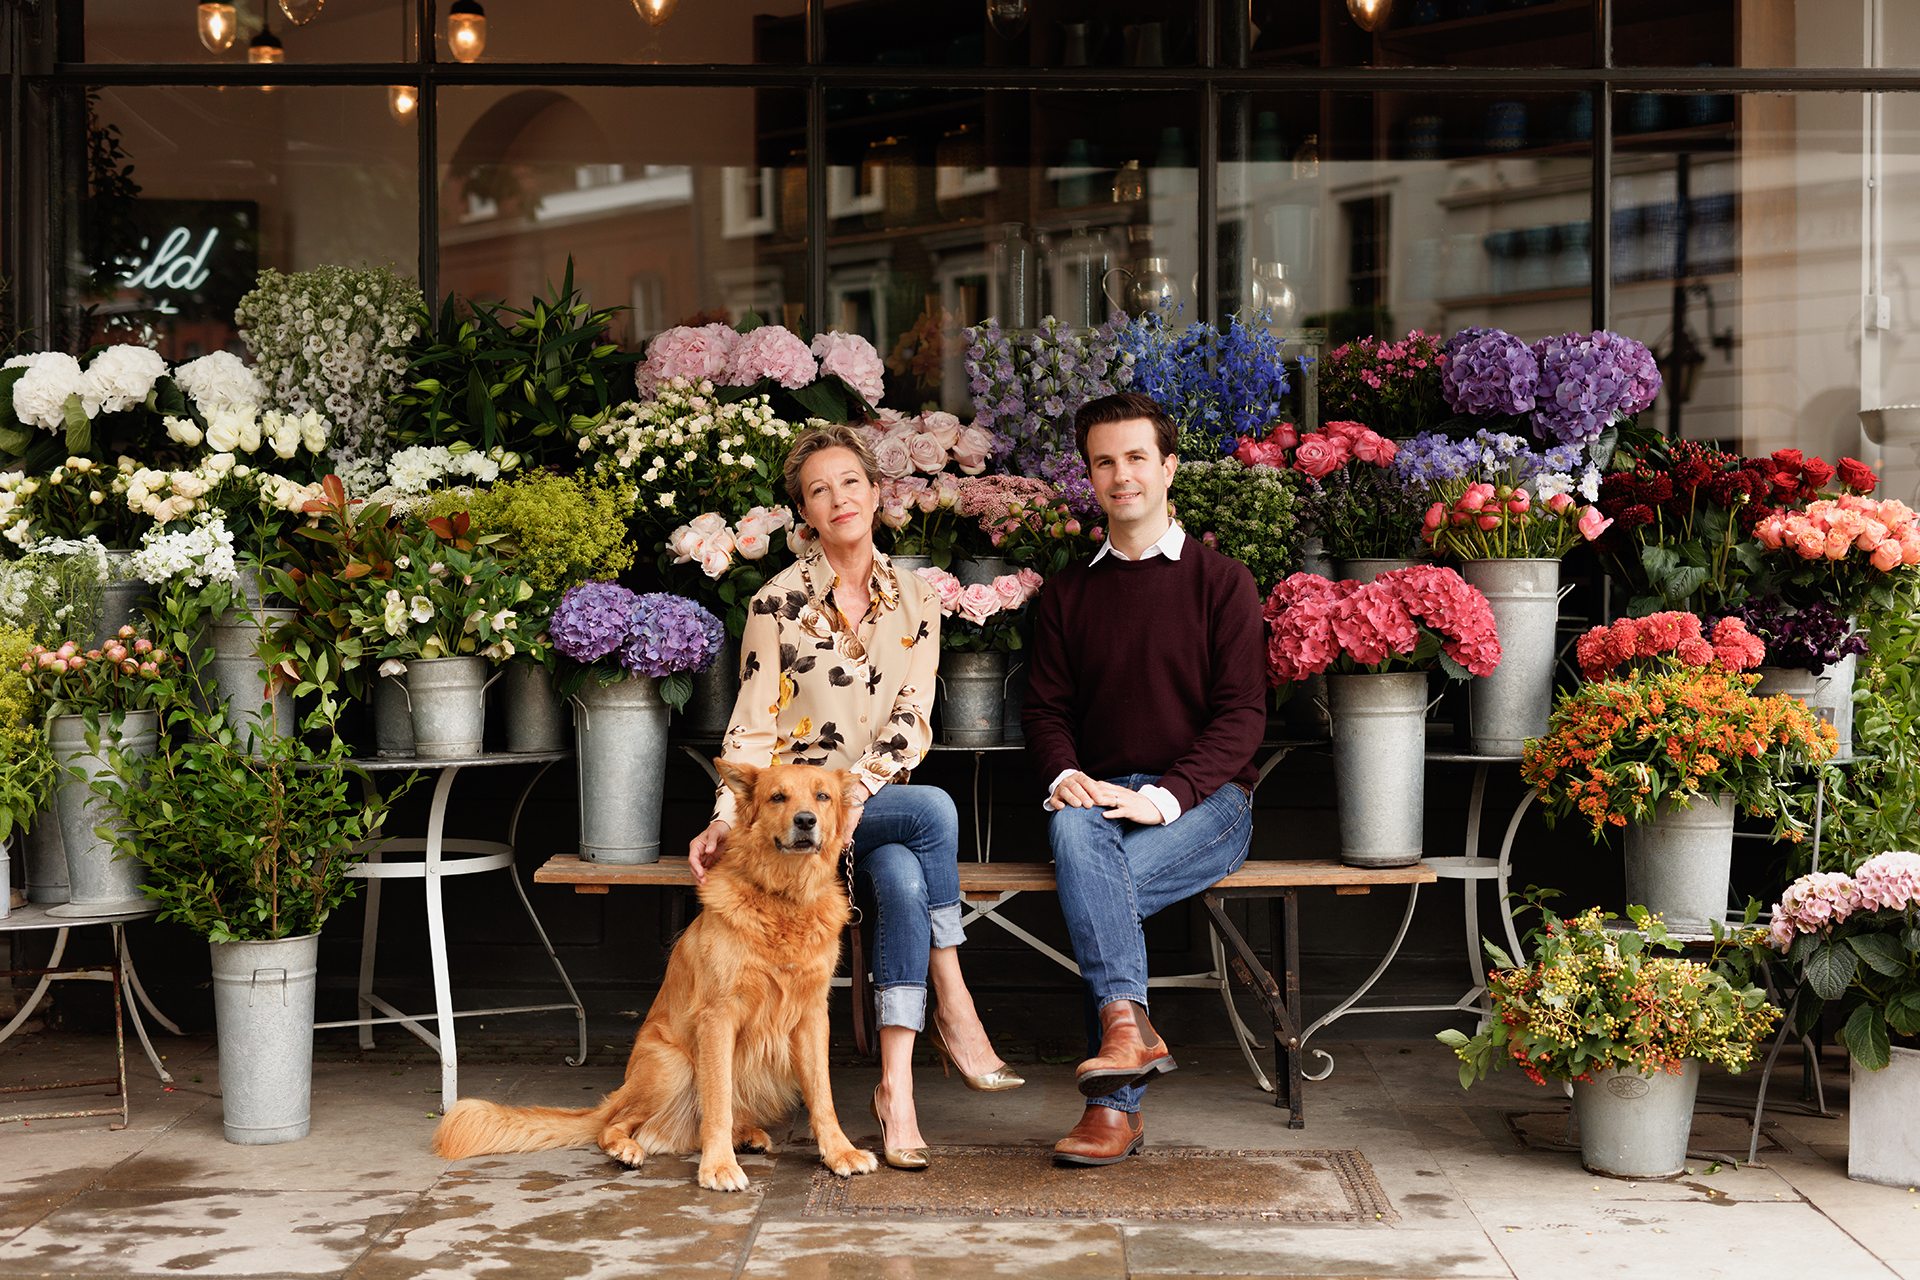 london's flower arranging classes | best floristry lessons 2019